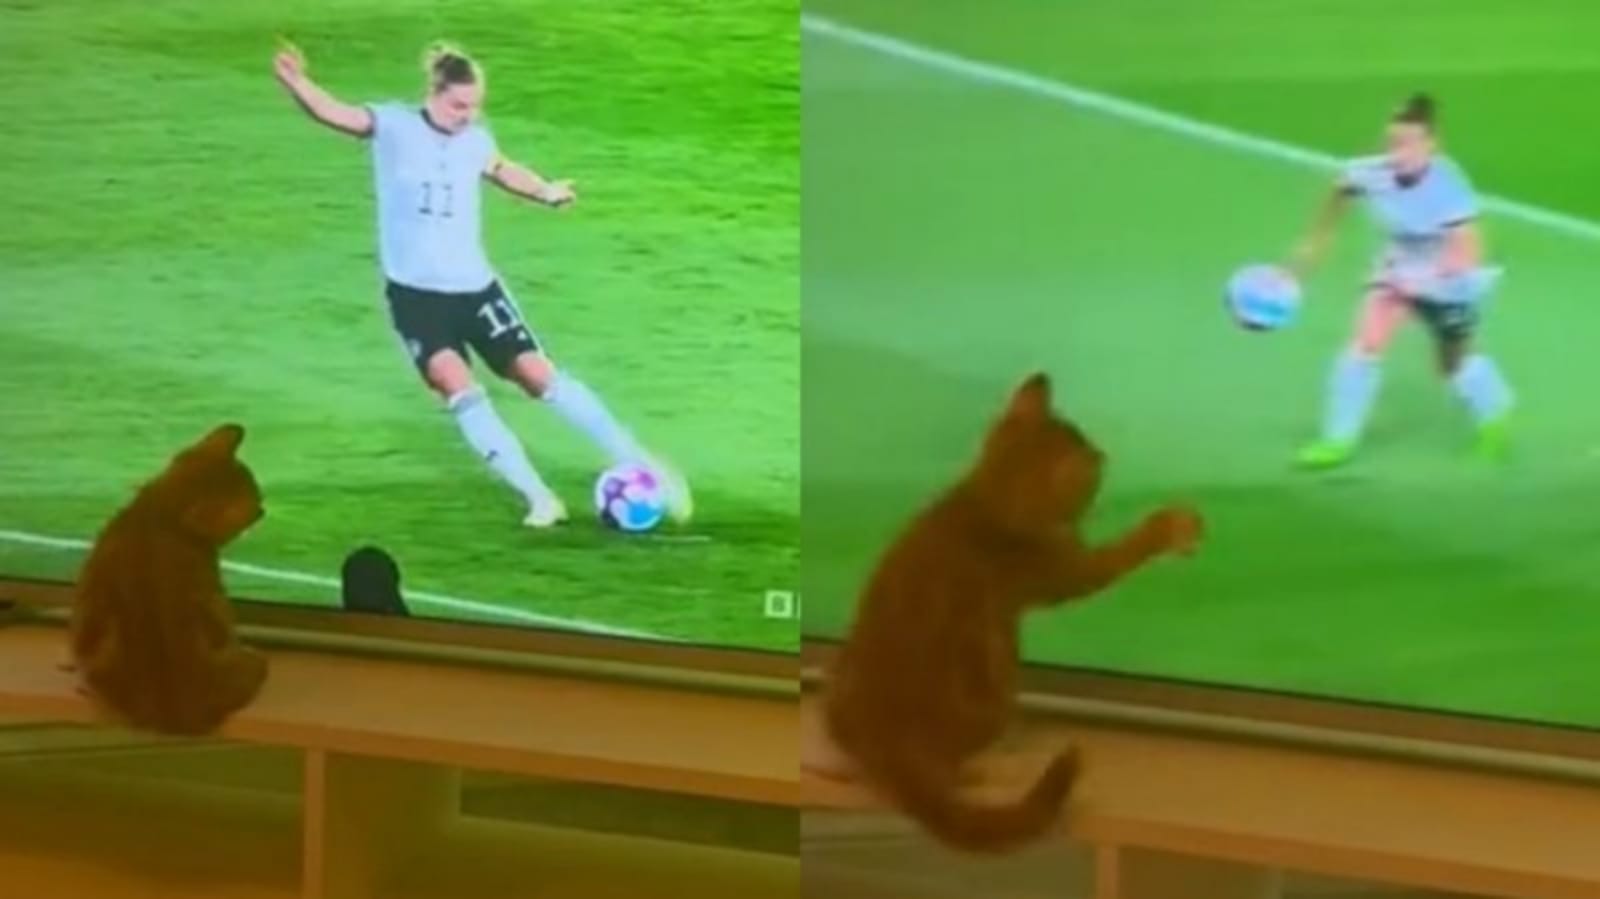 Gato defendendo gol pela tv